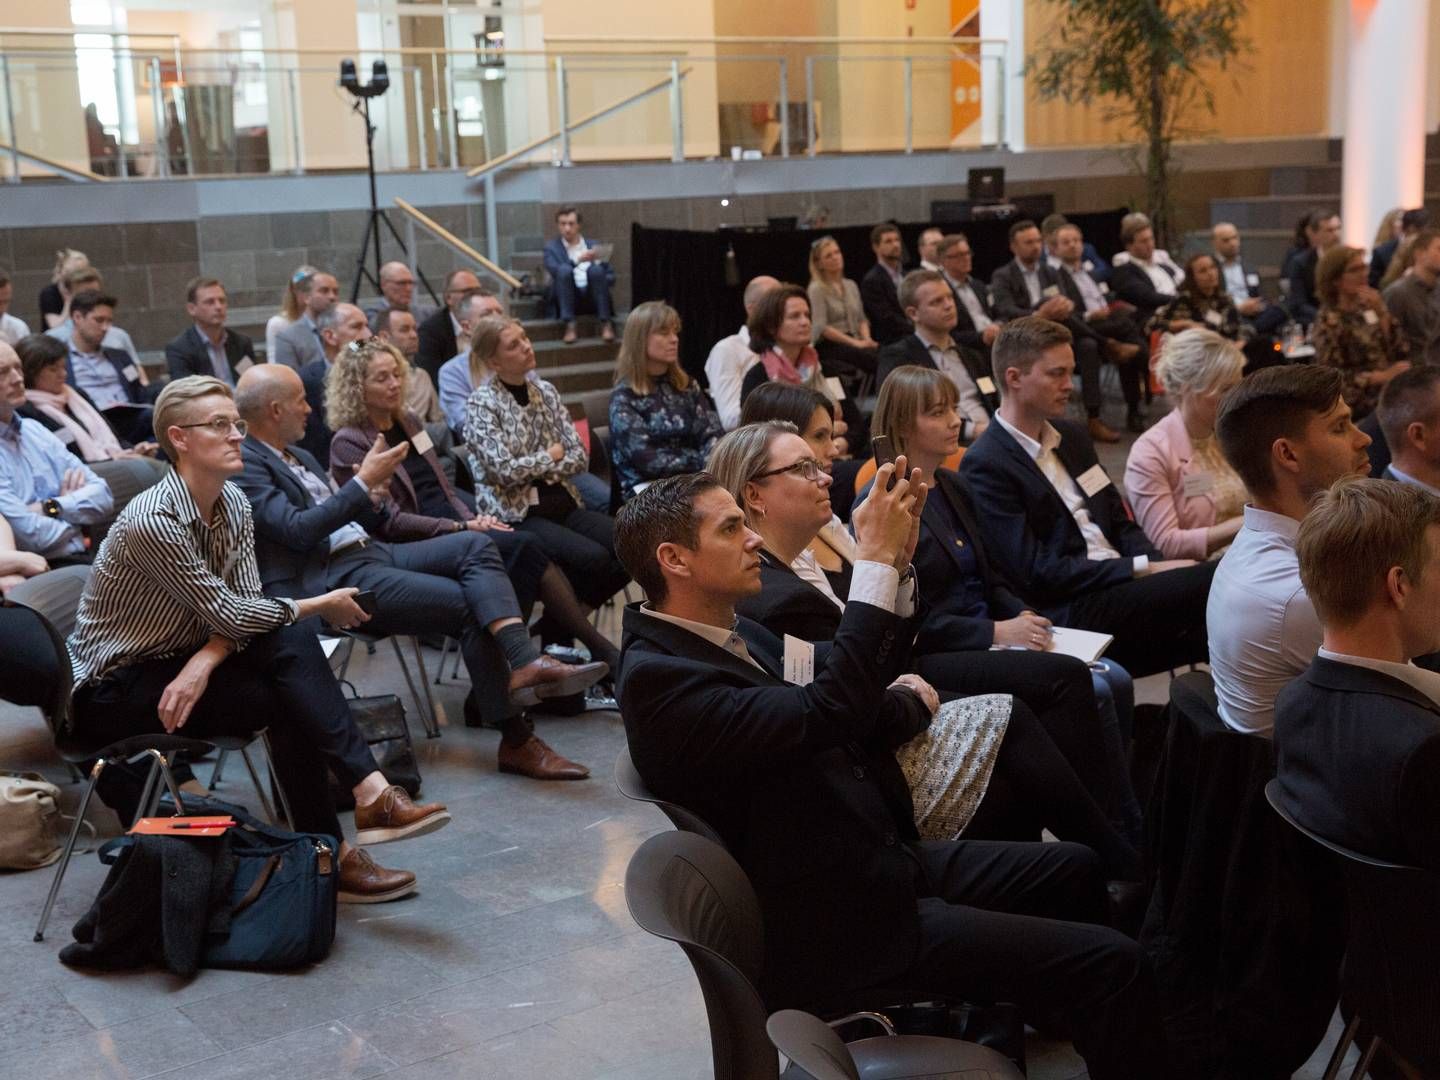 Mange var mødt frem til konferencen Årets Digitale Finansvirksomhed, som blev afholdt hos PwC i Hellerup. Foto: Charlotte de la Fuente